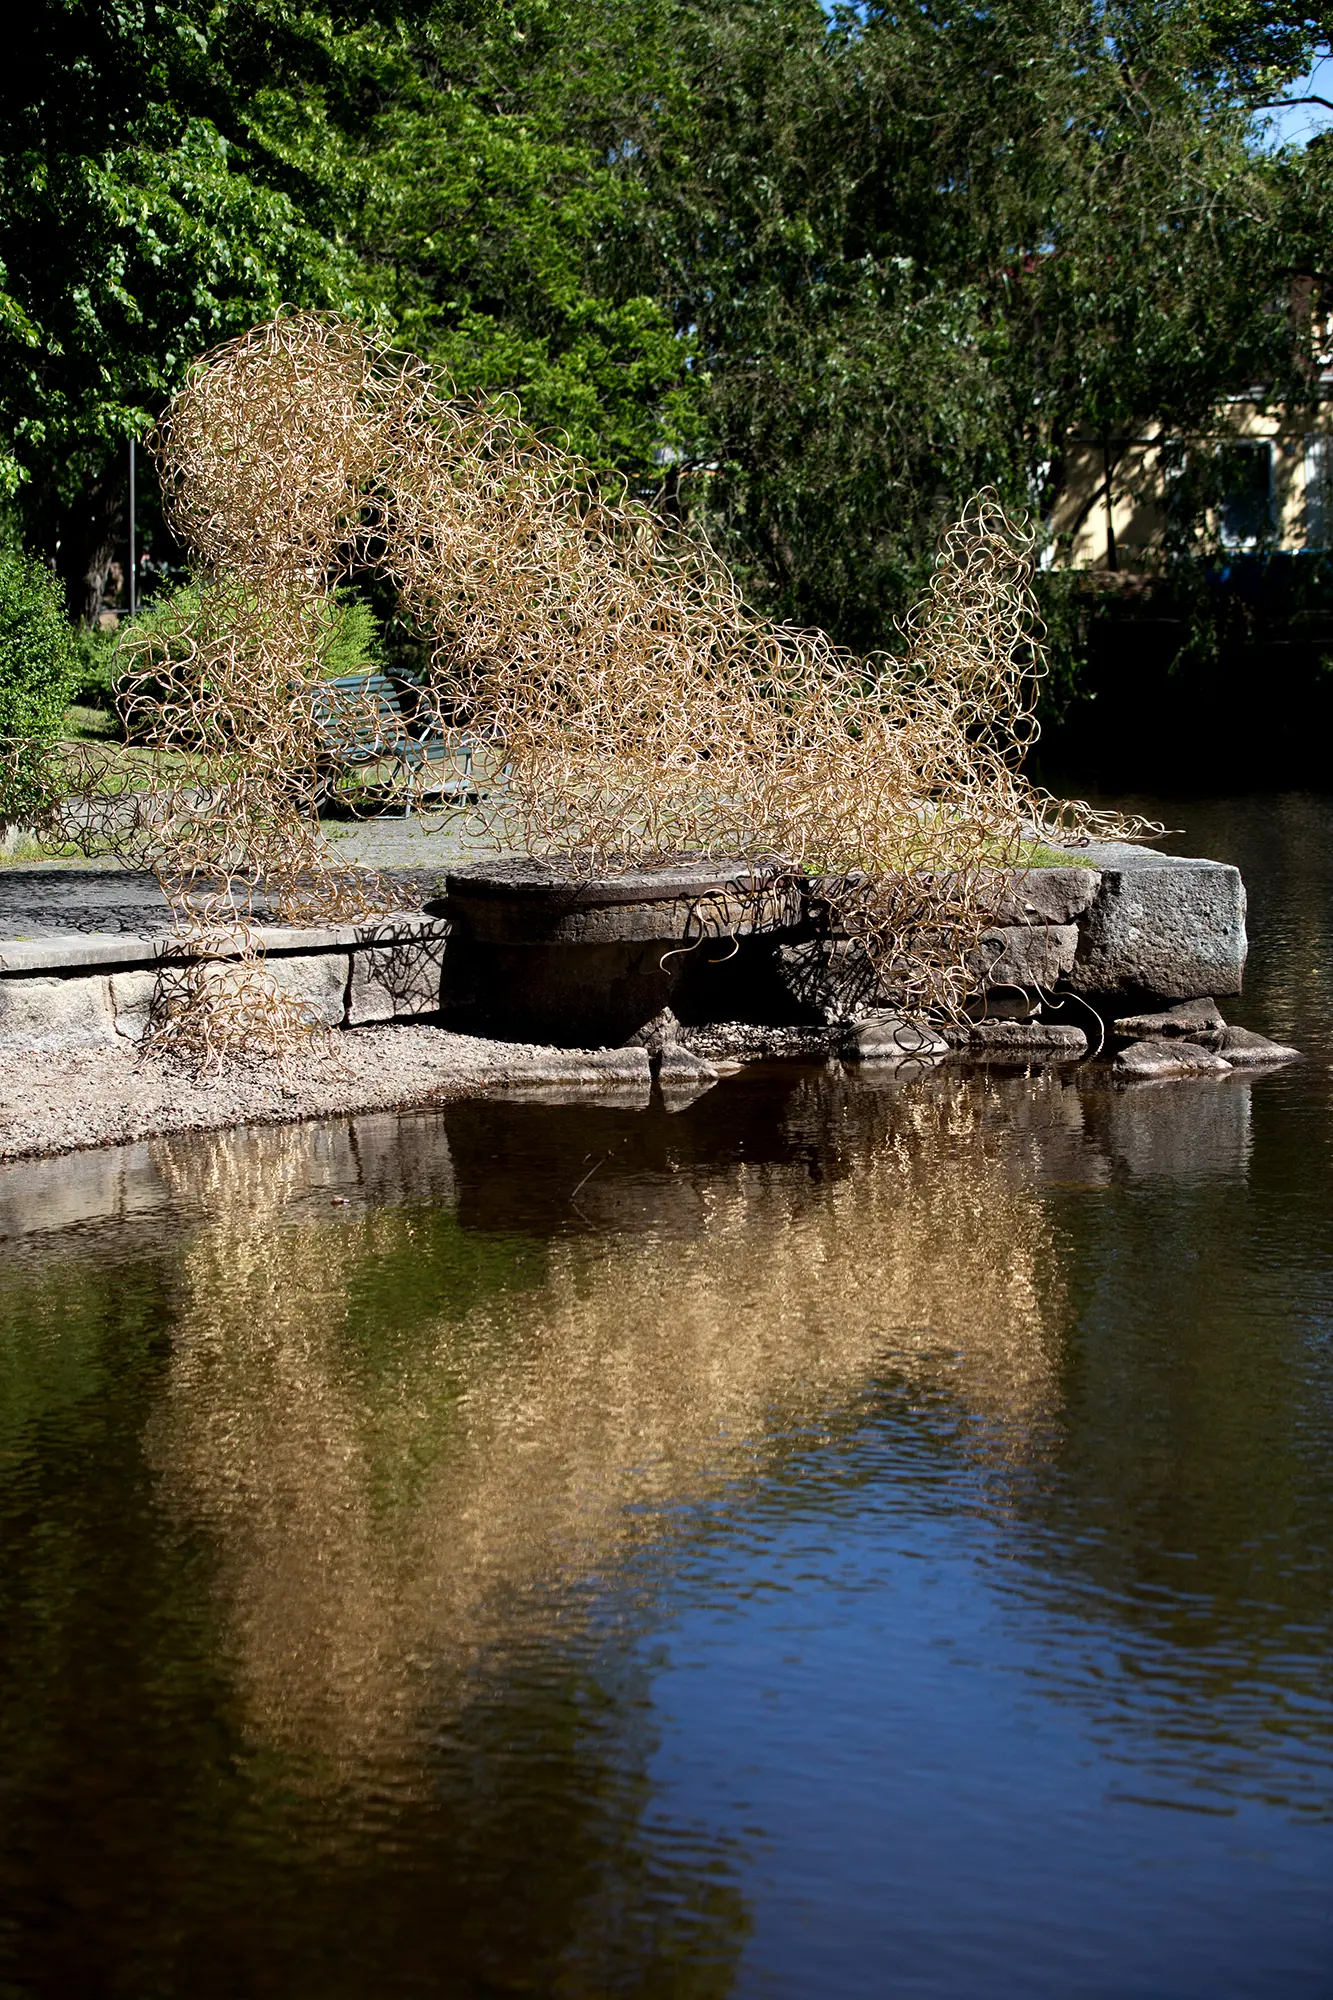 Vid vattenkanten av en å står en stor skulptur uppbyggd av ett virrvarr av tunna guldfärgade metalltrådar som sitter ihop tätt i en oregelbunden form. I vattnet syns en suddig reflektion av skulpturen och i bakgrunden syns träd.